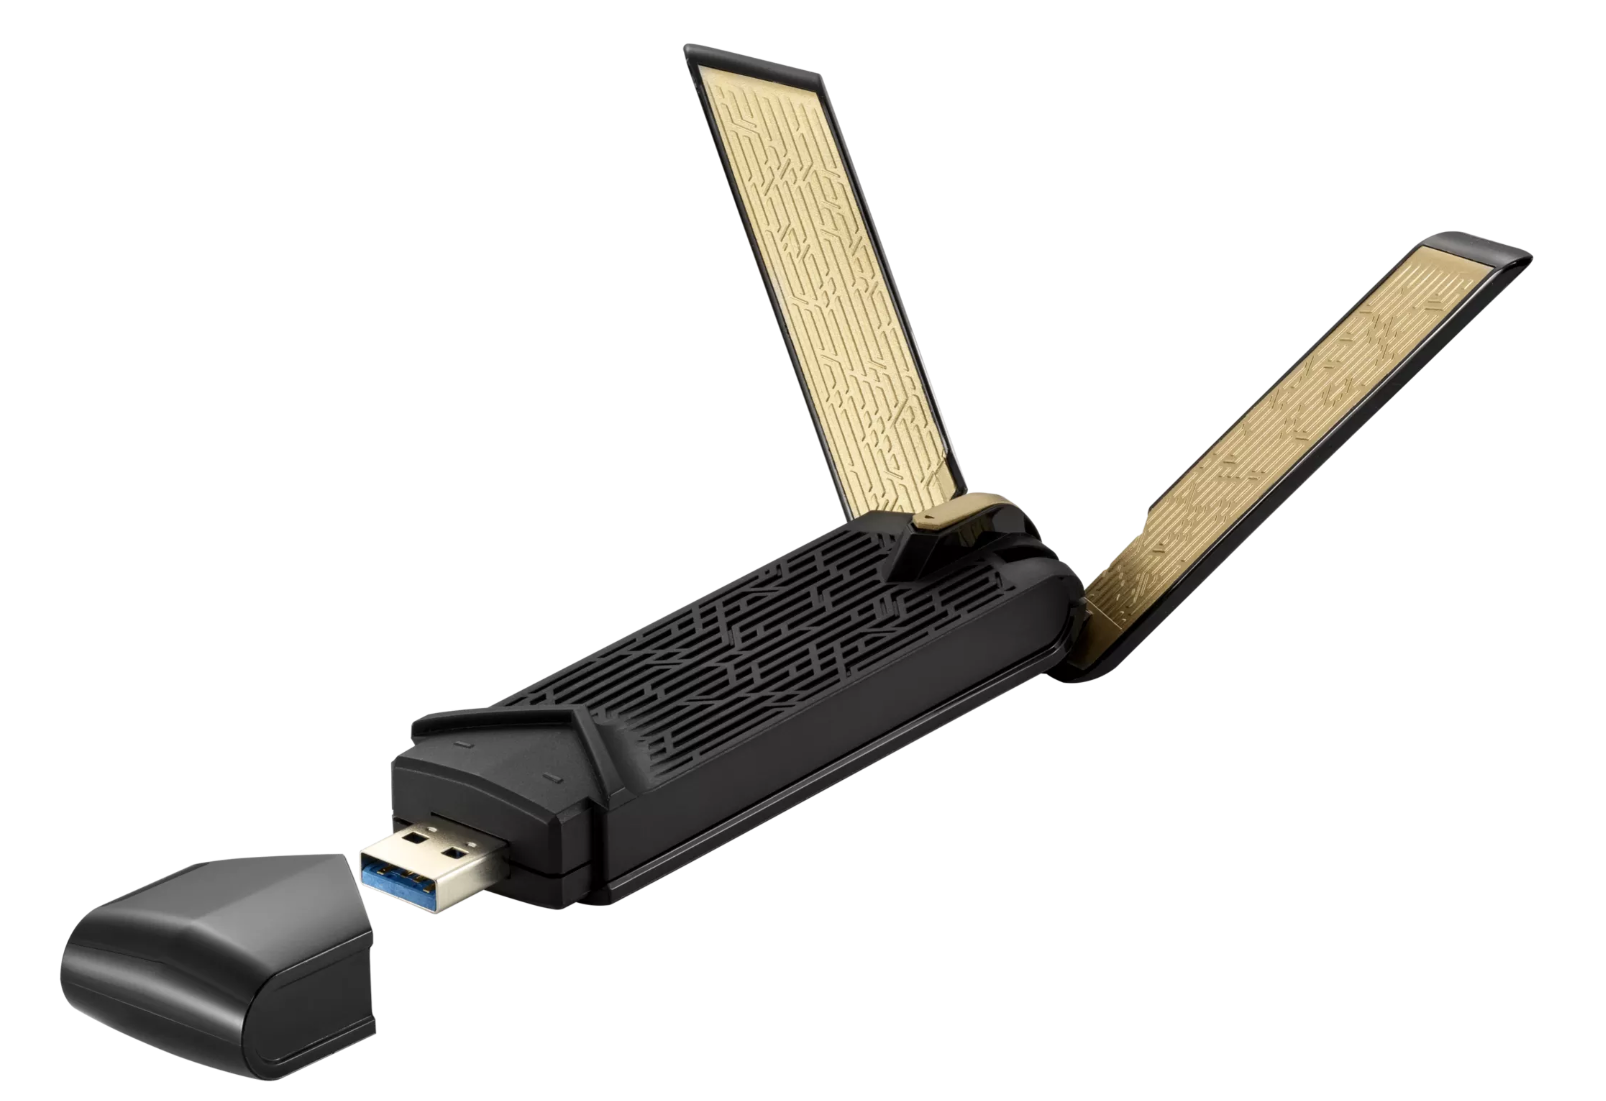 Asus - Asus USB-AX56 Dual Band AX1800 USB WiFi Adapter